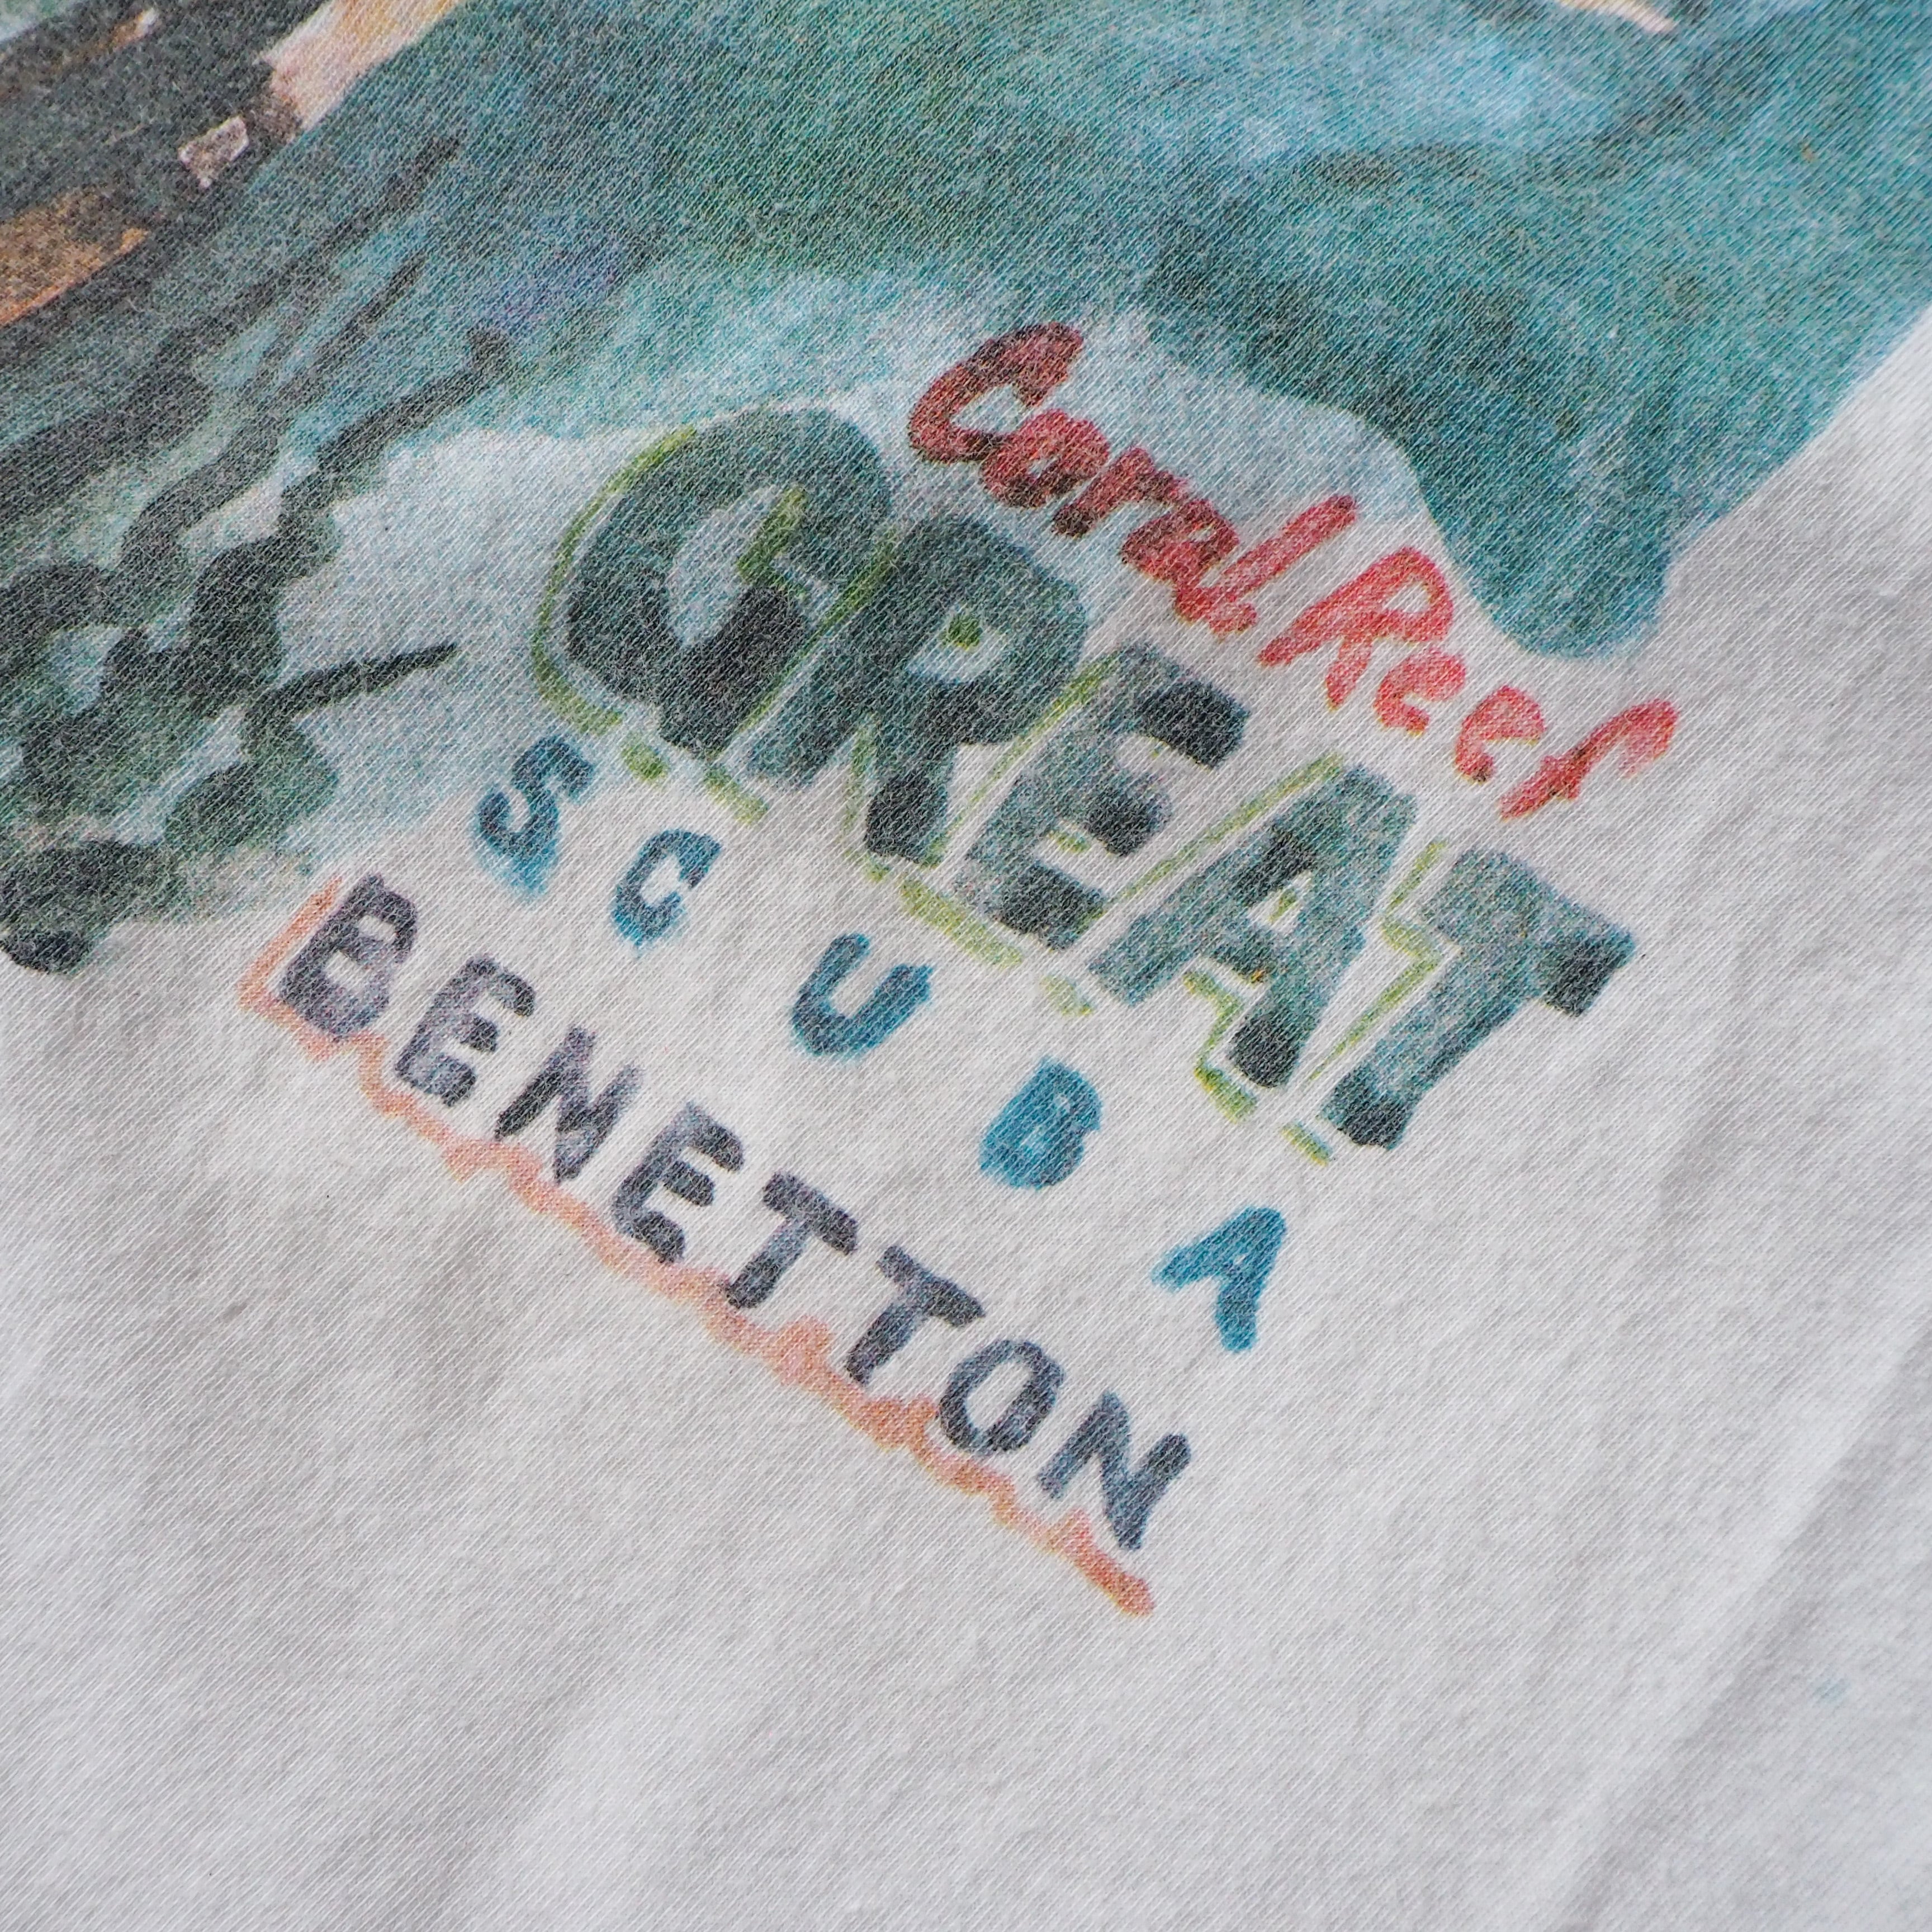 【イタリア製】80s 90s BENETTON ロゴ刺繍 tシャツ ヴィンテージ